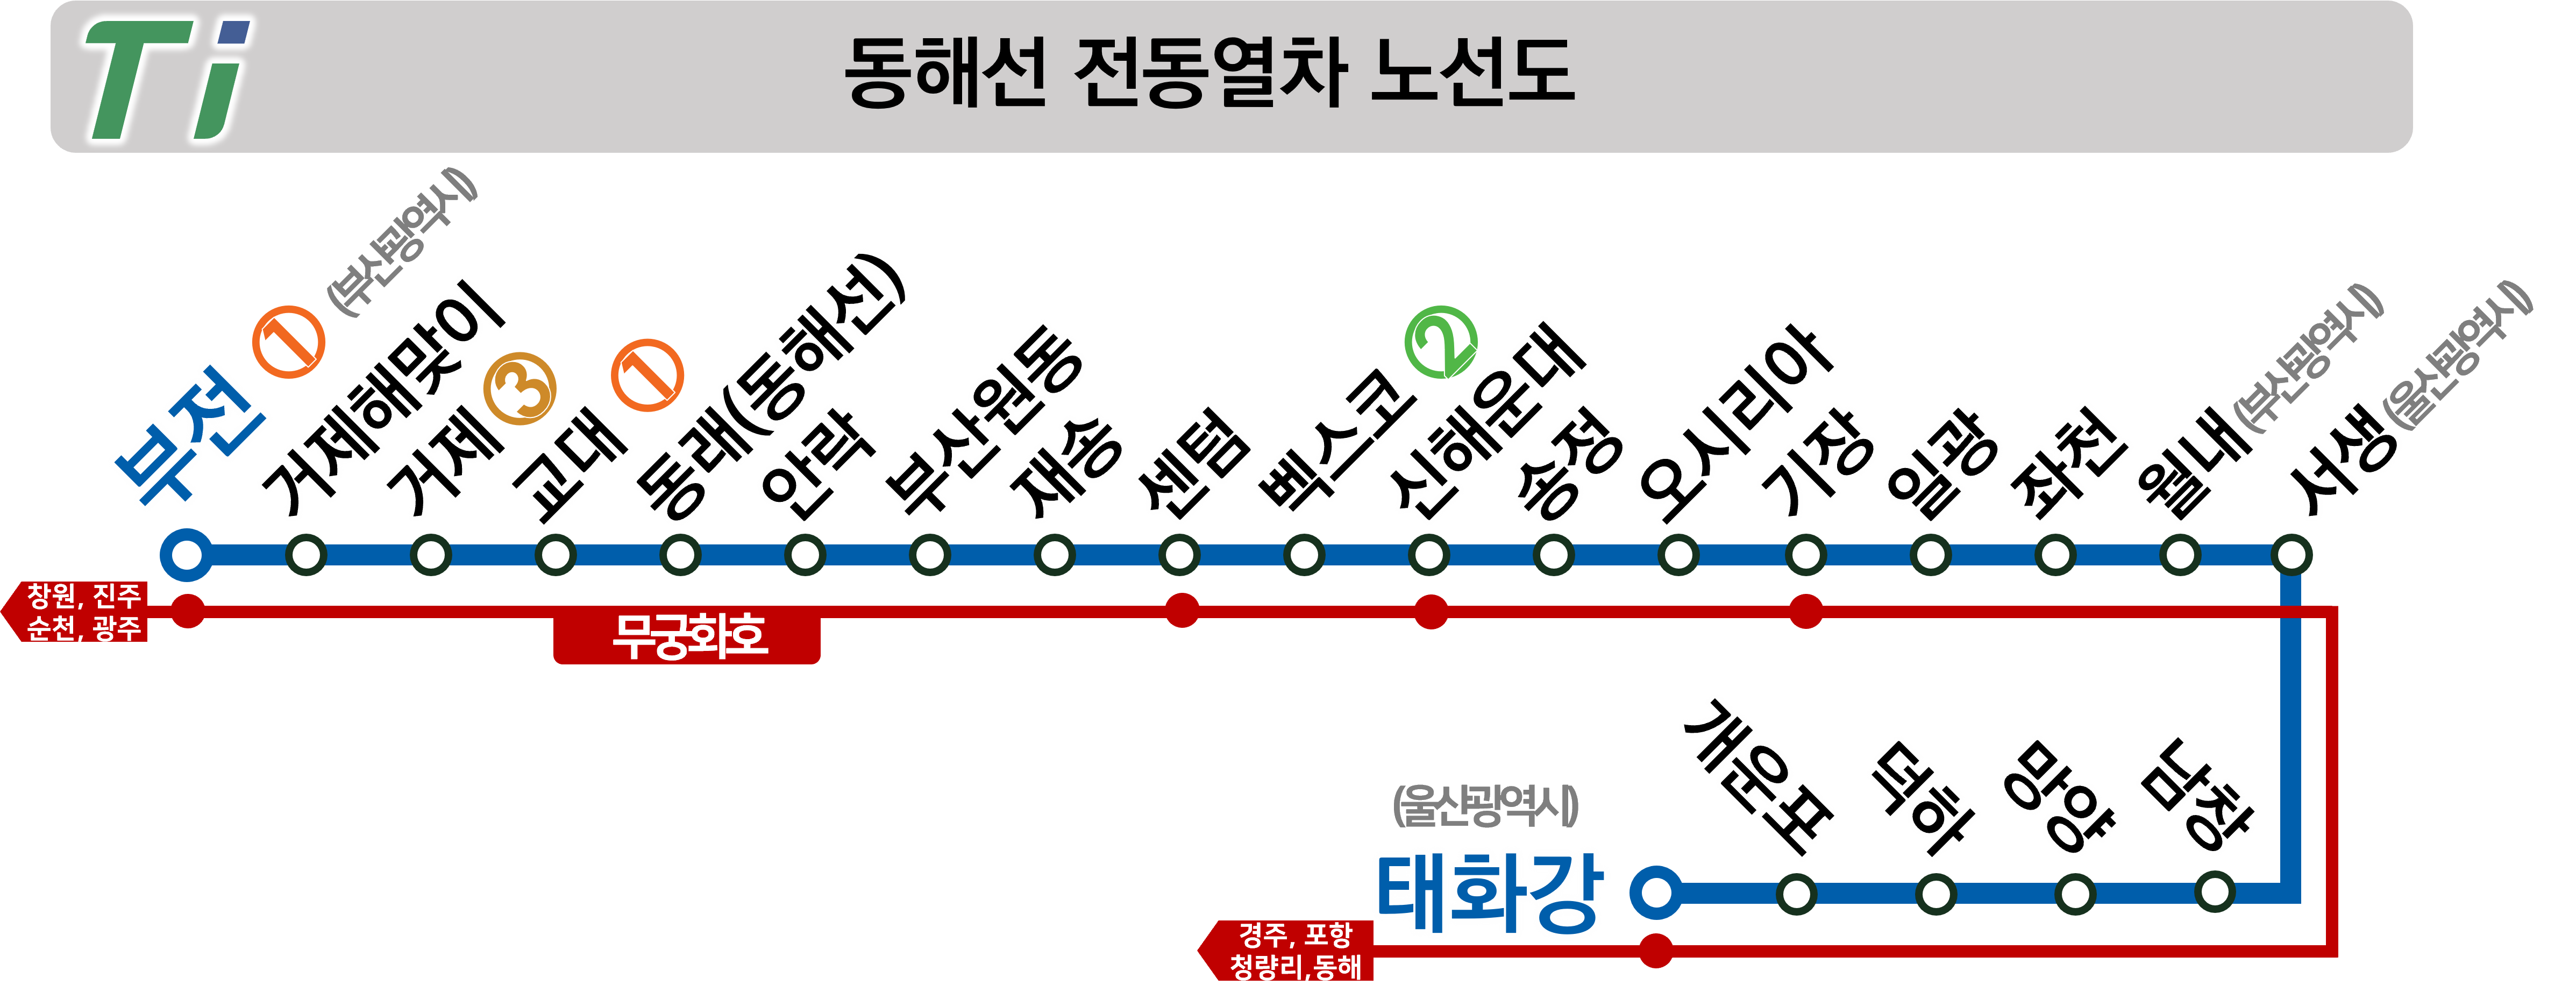 부전역 열차시간표, 요금(동해선 전철, 무궁화호, Itx-새마을. 부산 1호선), 시내버스 환승정보